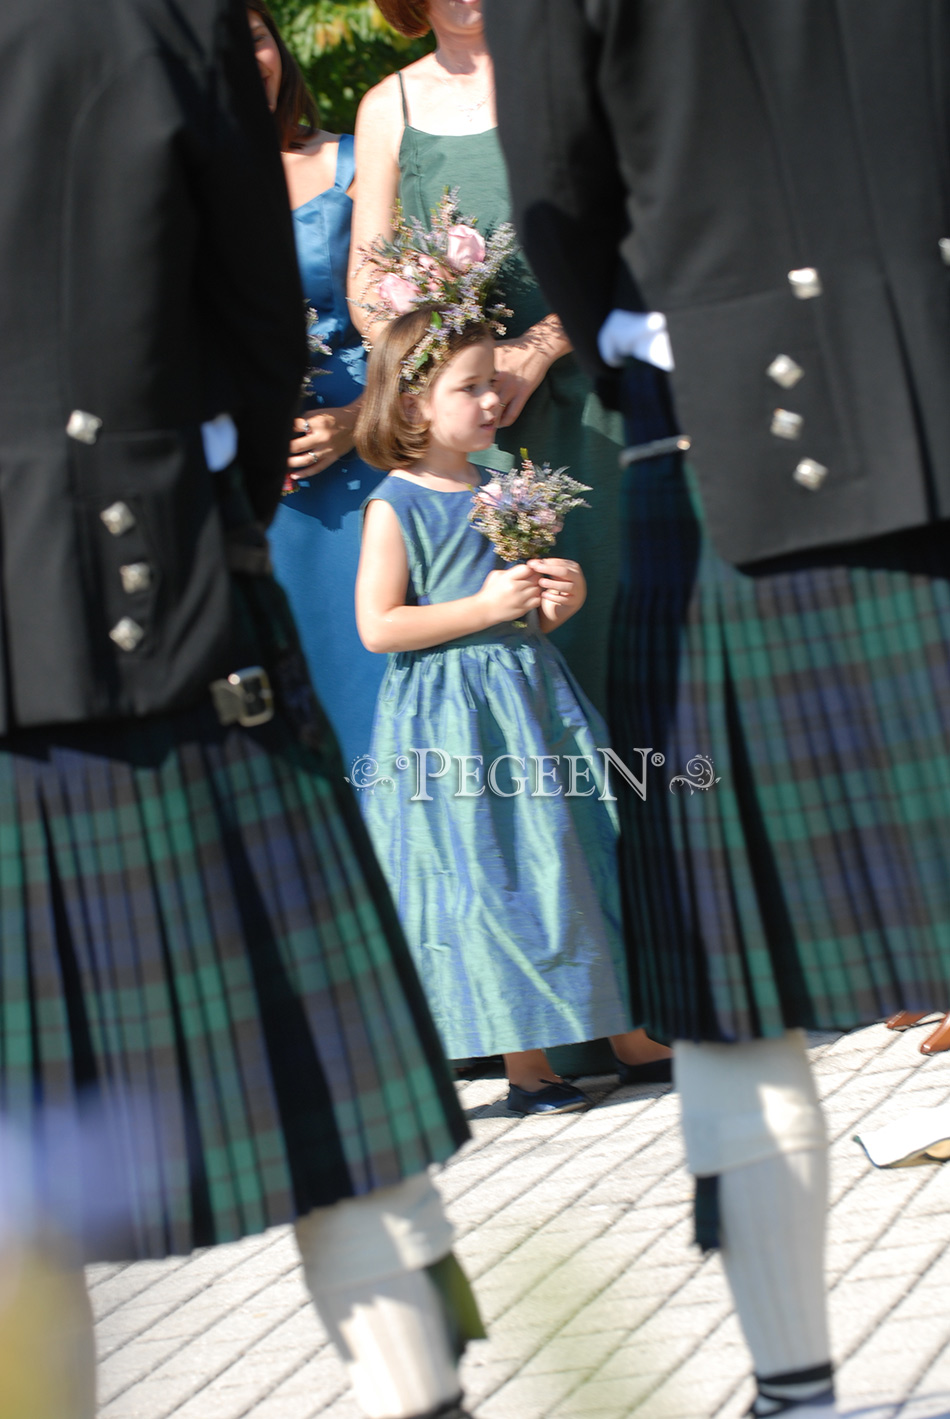 Plaid flower girl dresses - Scottish themed weddings